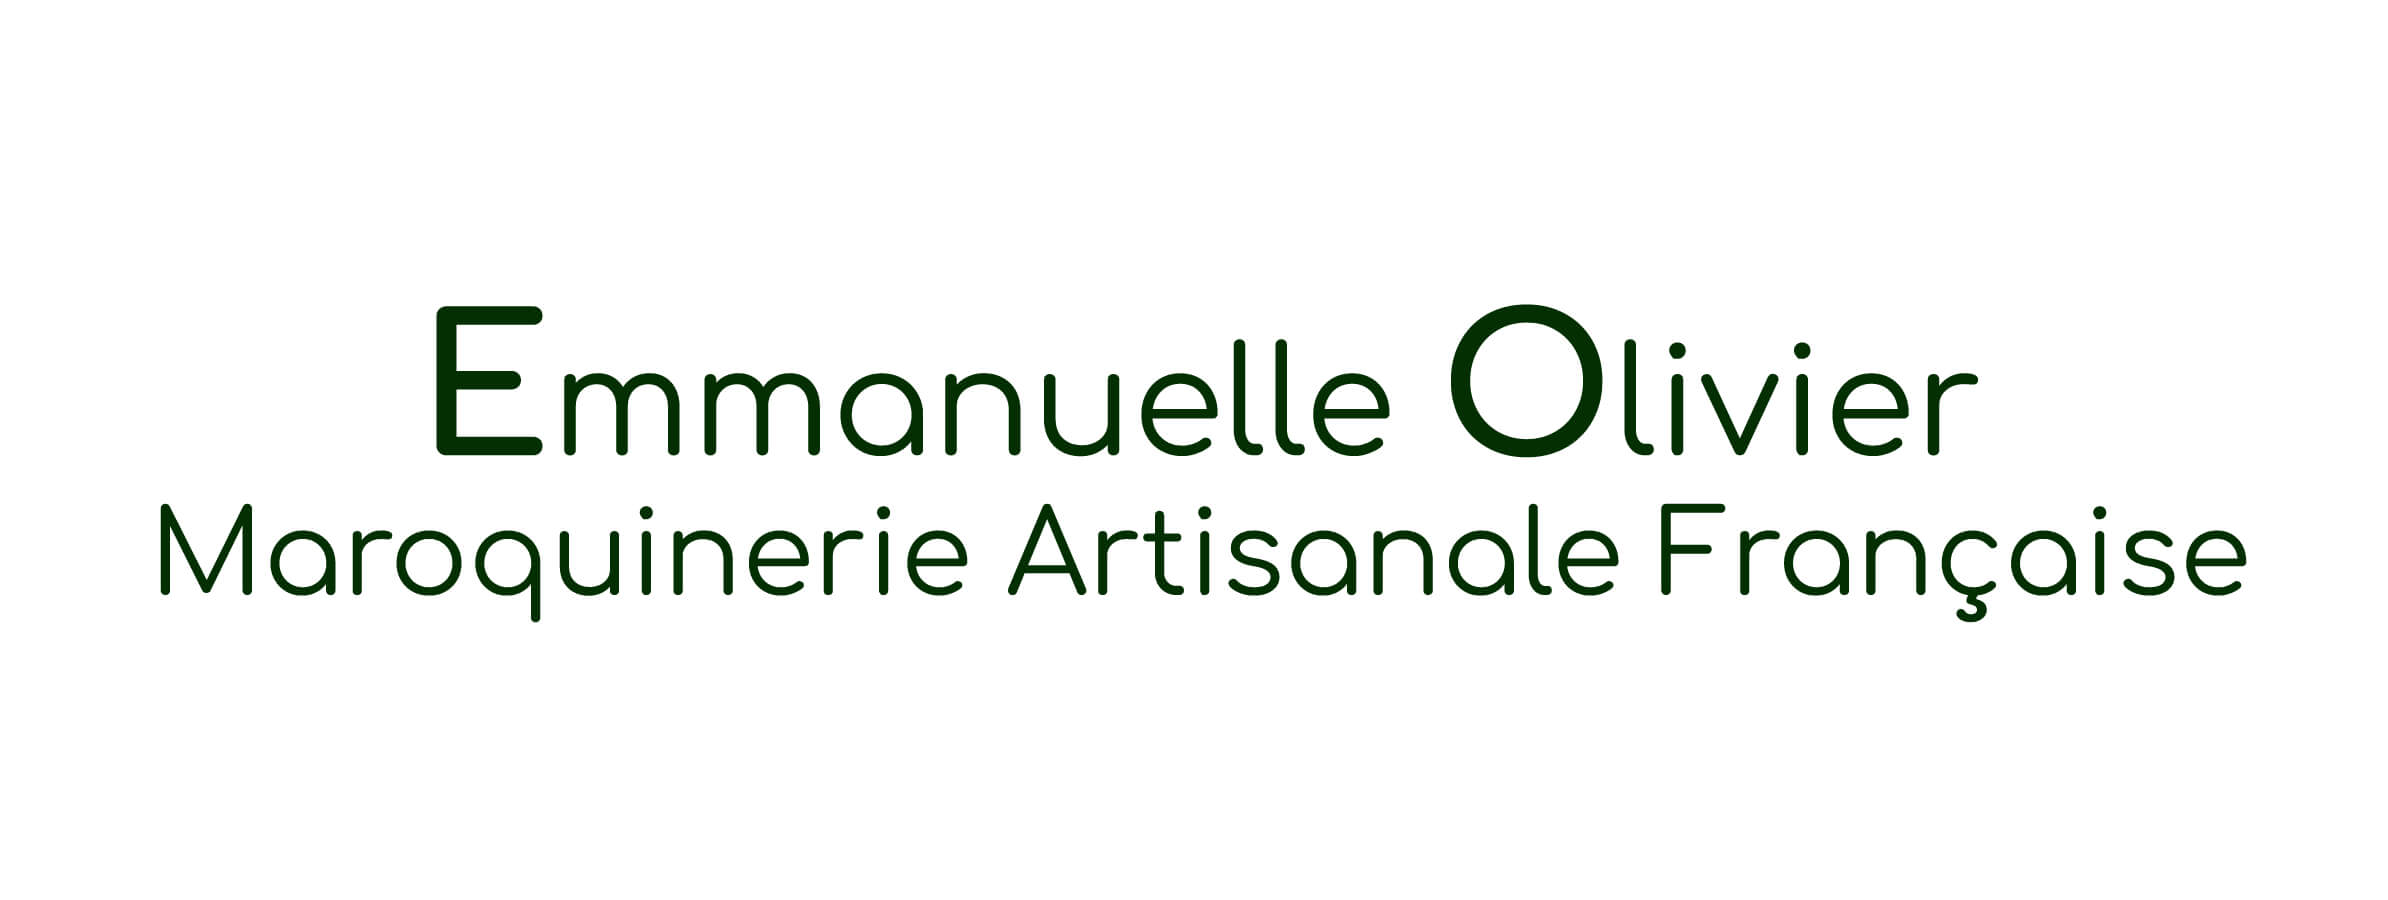 Emmanuelle Olivier Maroquinerie